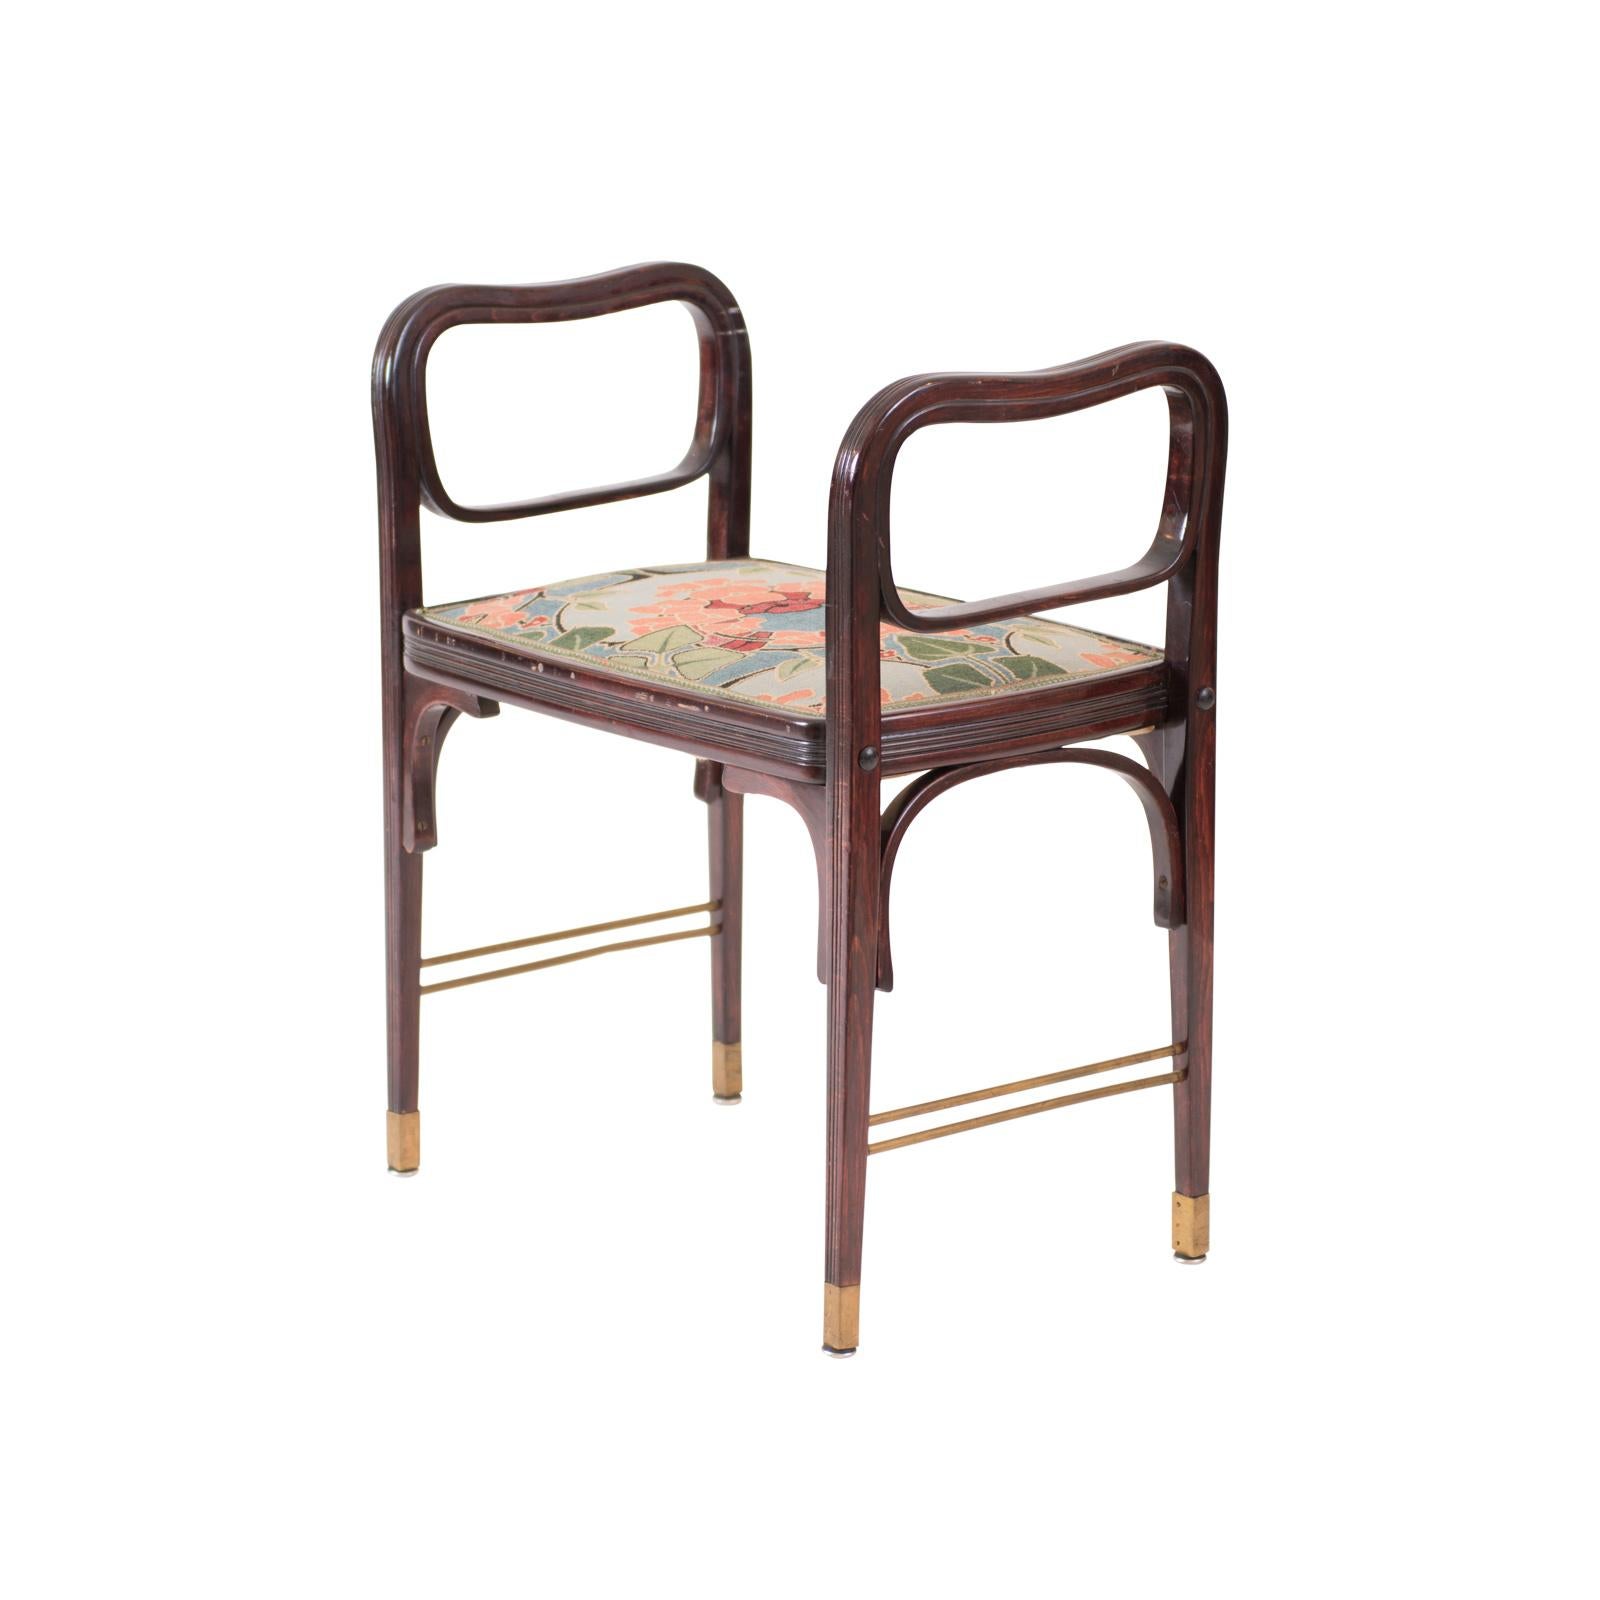 En tant que pionnier et maître de la modernité, Otto Wagner s'est emparé de la technique alors relativement nouvelle du cintrage du bois pour ses créations de meubles.
Parfois, ces meubles sont également attribués à Koloman Moser.
La conception de